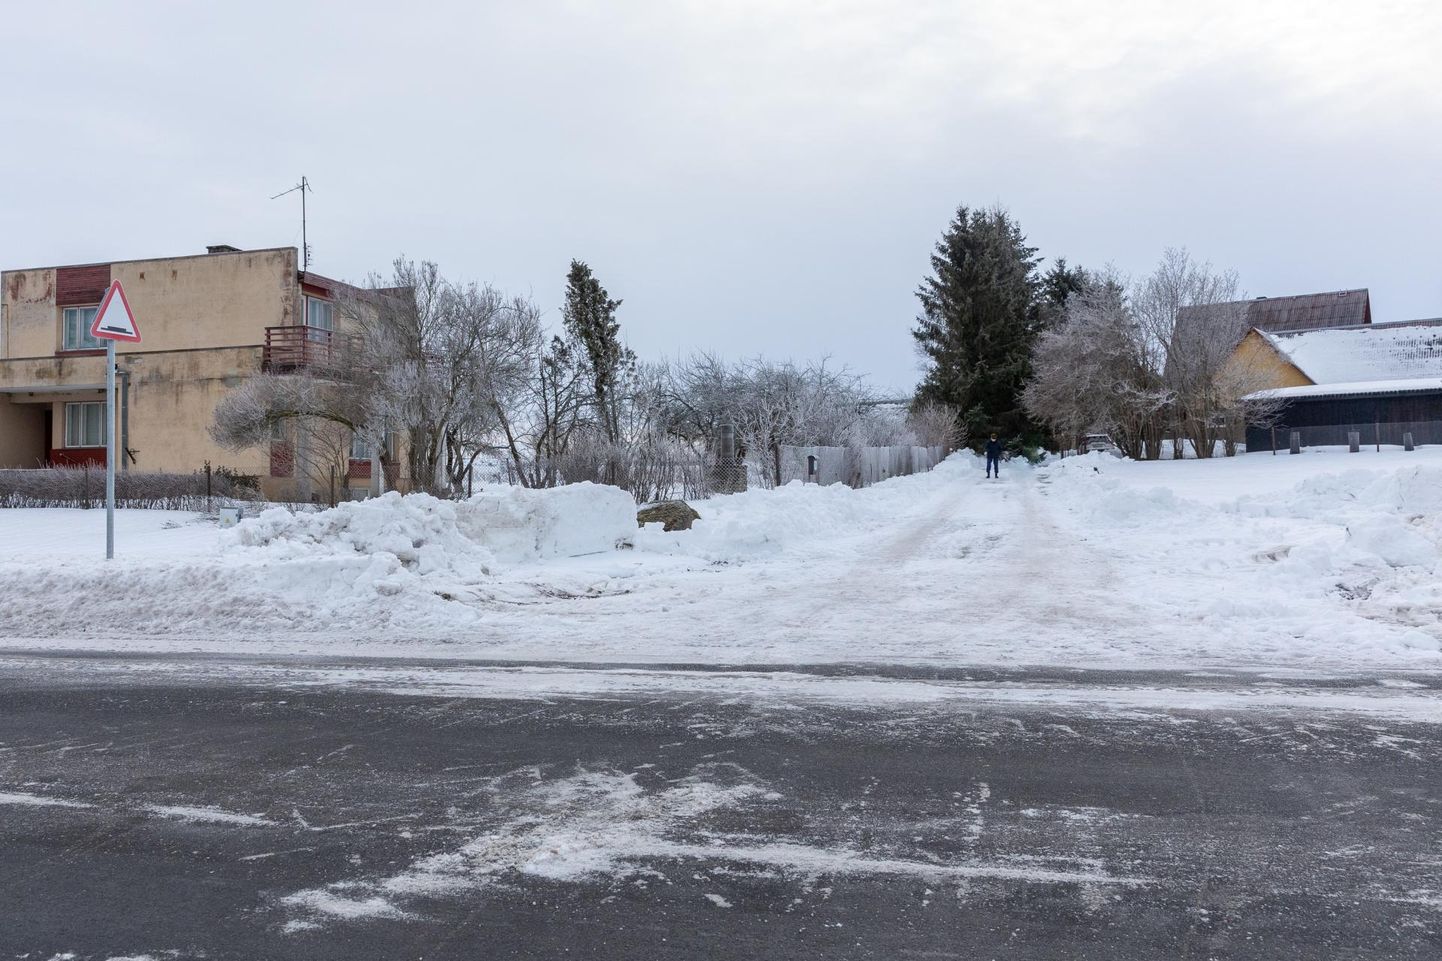 Pildi tegemise ajaks olid Ando Uusküla majani viivalt teelt vallid juba koristatud, kuid seda tegi majaomanik ise oma kulu ja kirjadega.